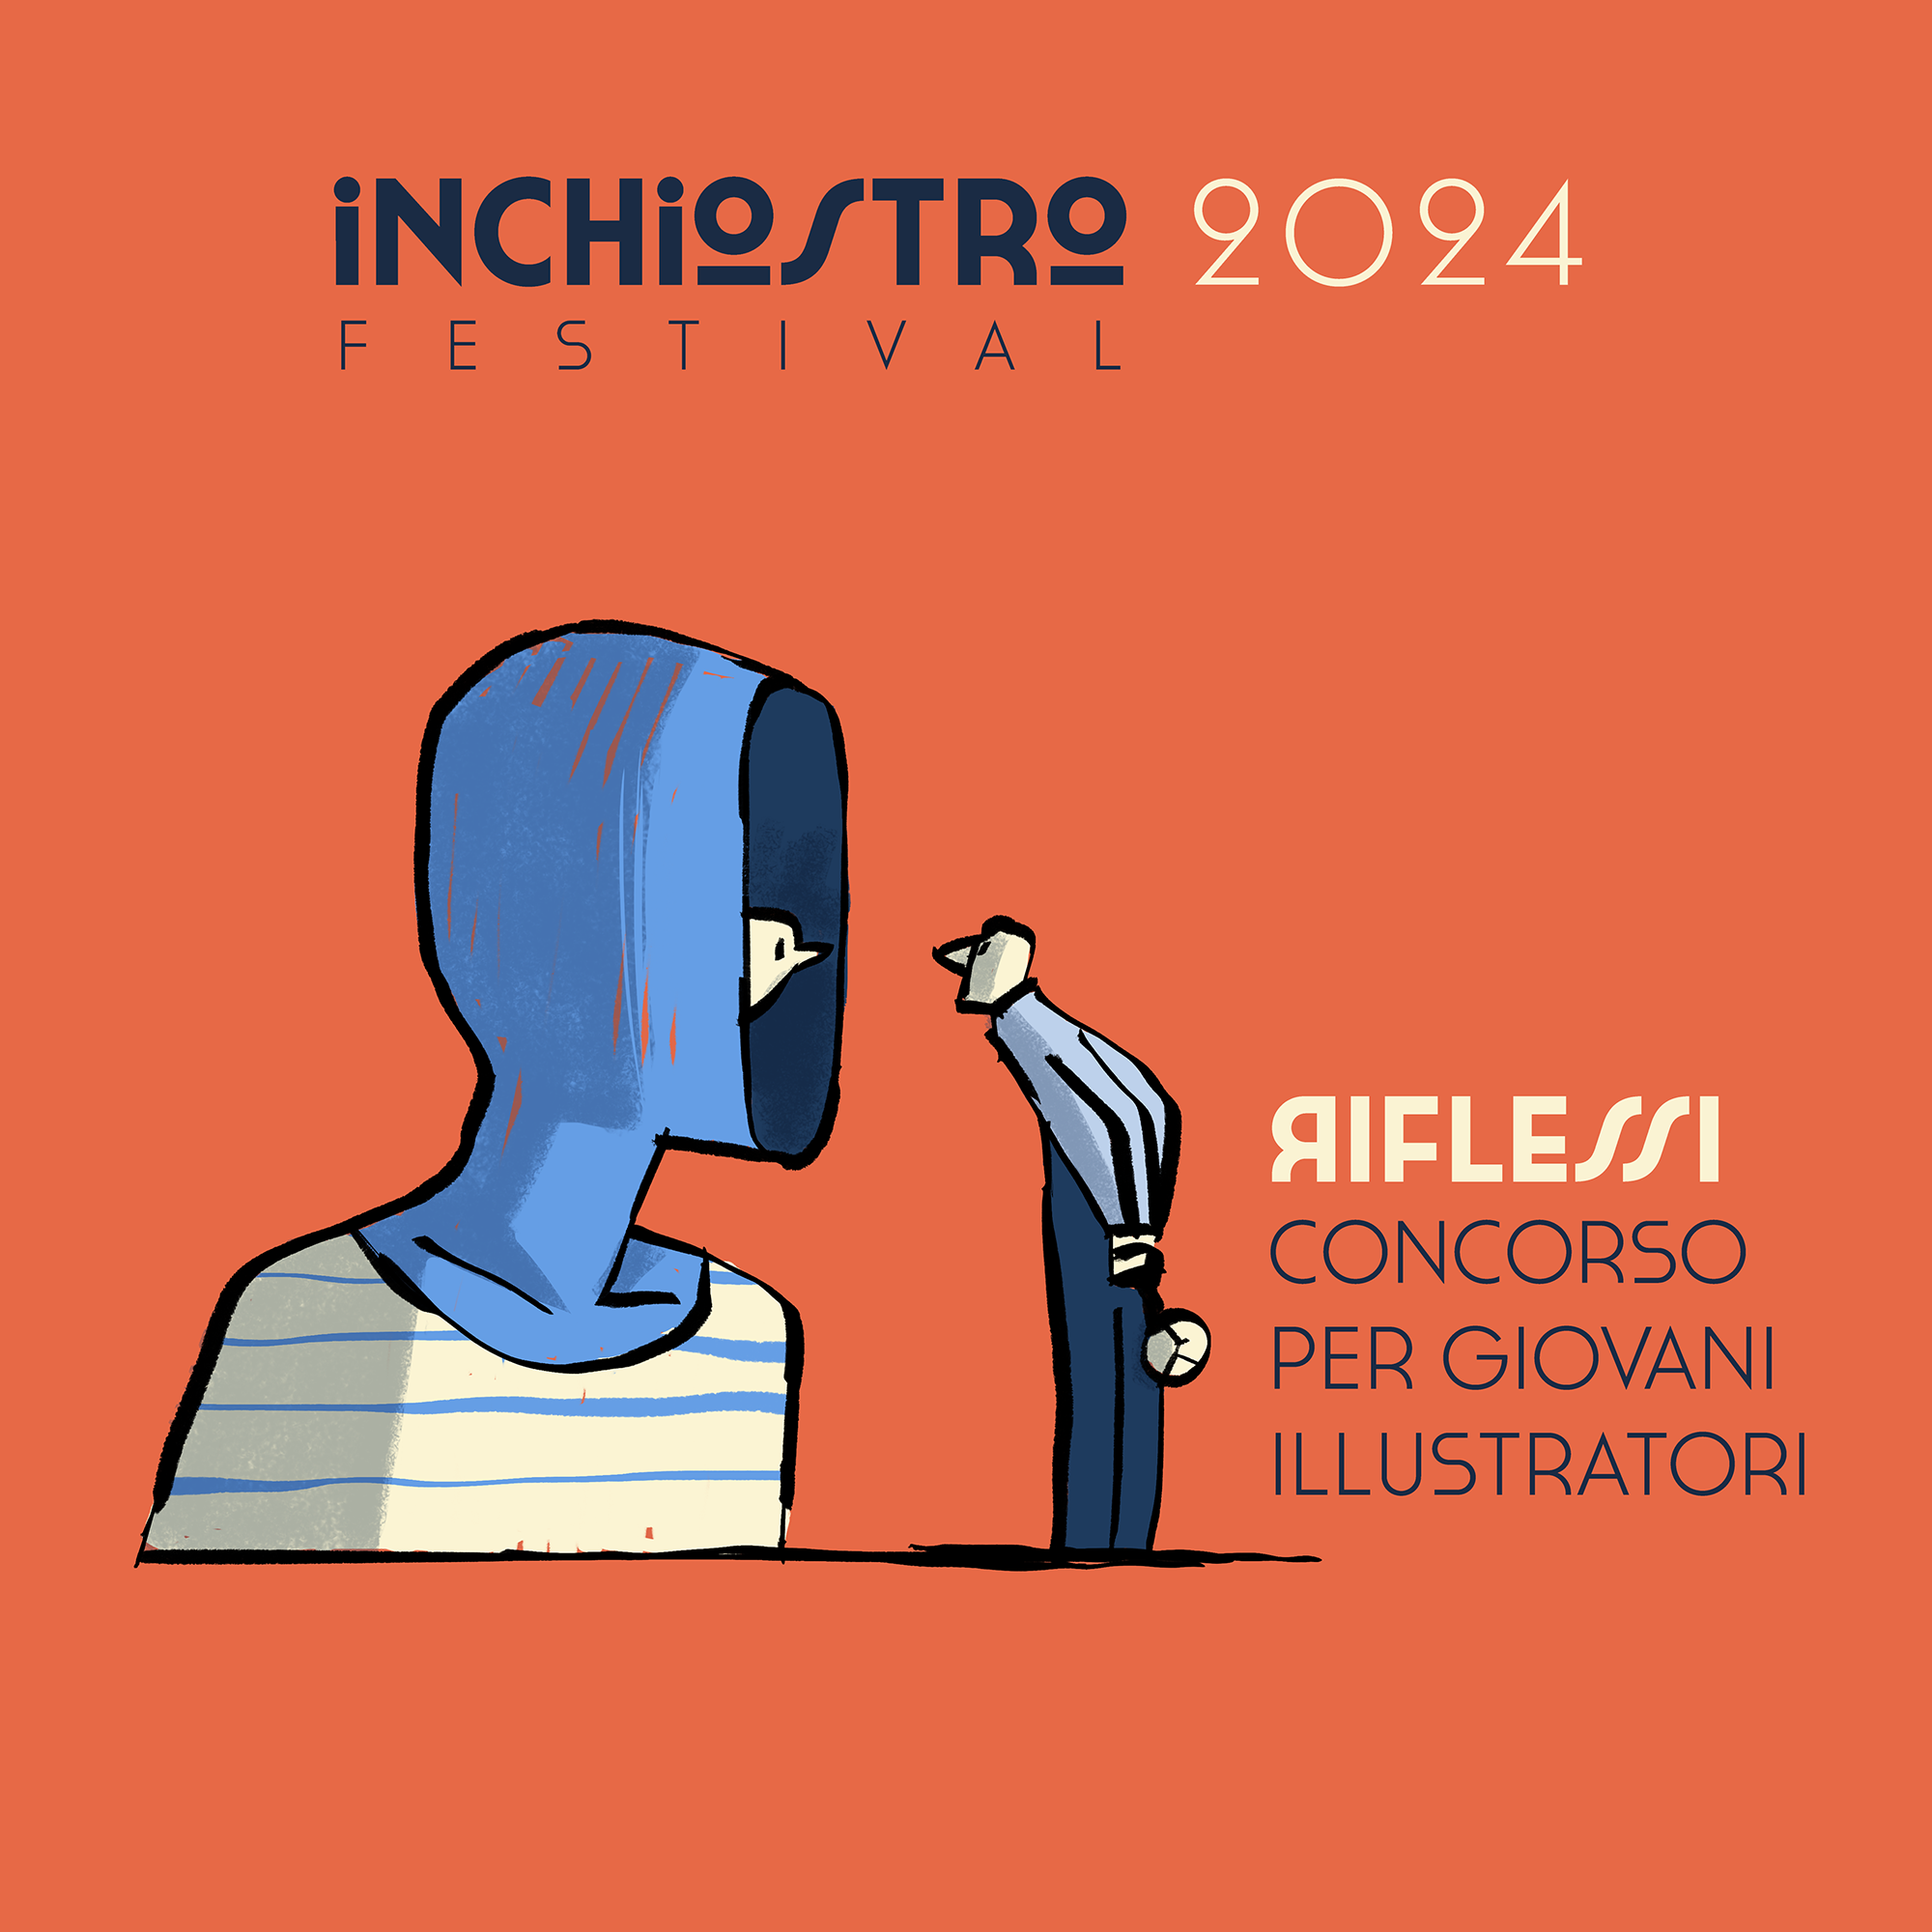 Concorso per giovani illustratori - Inchiostro Festival 2024 - RIFLESSI